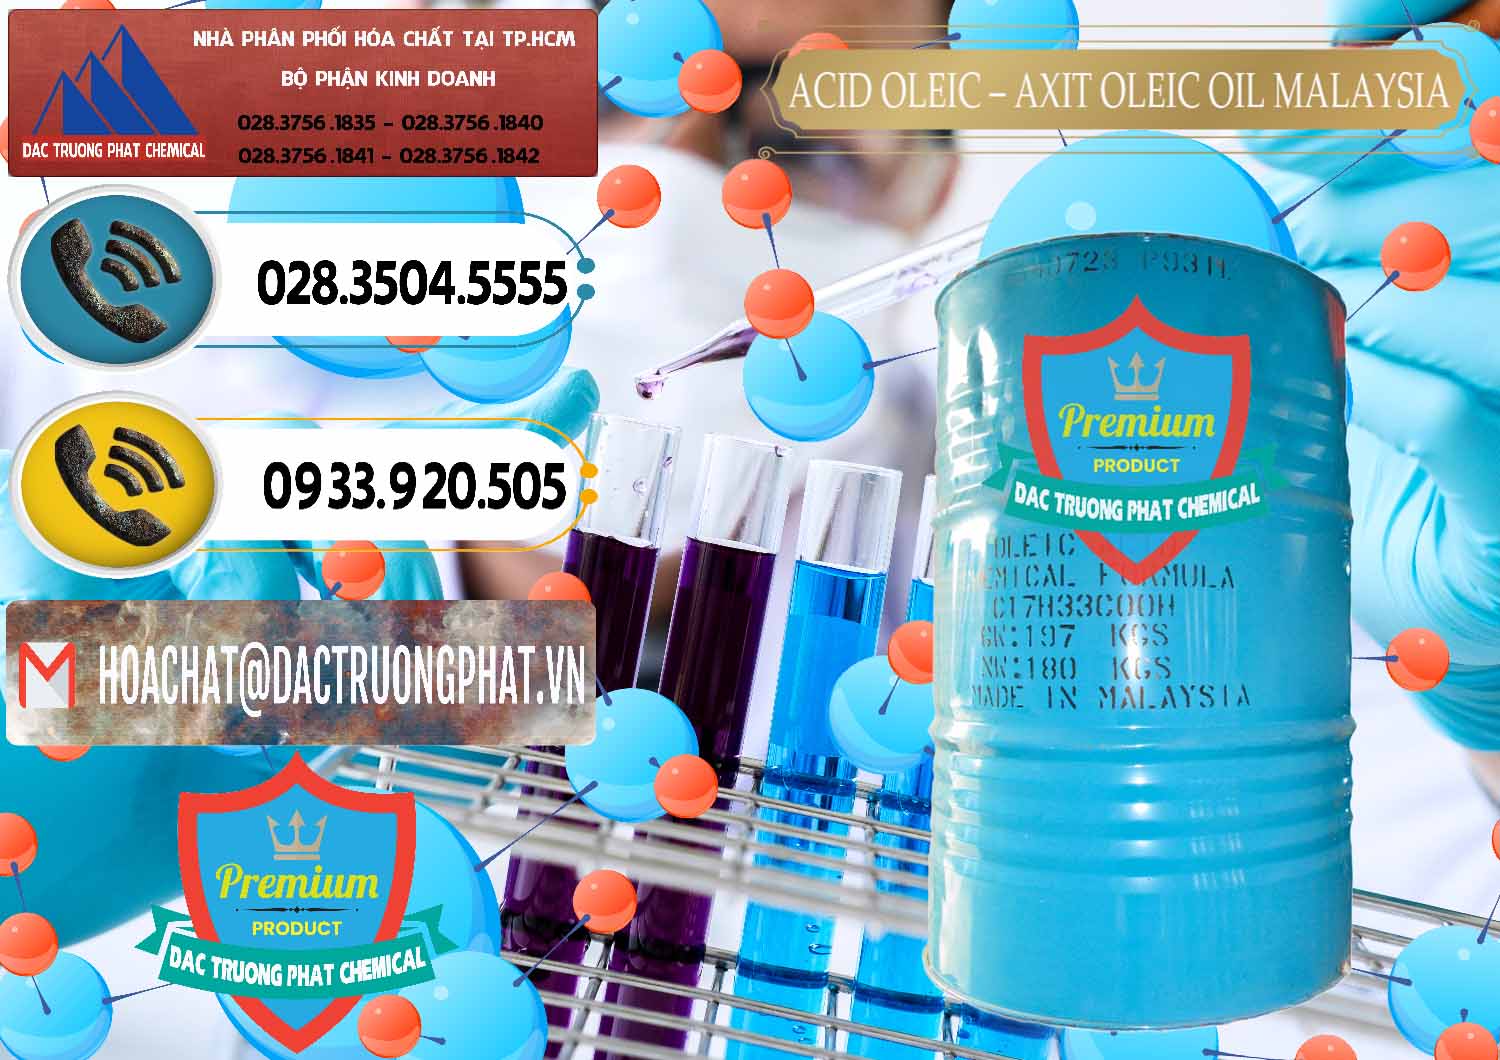 Chuyên cung cấp & bán Acid Oleic – Axit Oleic Oil Malaysia - 0013 - Chuyên phân phối - cung cấp hóa chất tại TP.HCM - hoachatdetnhuom.vn